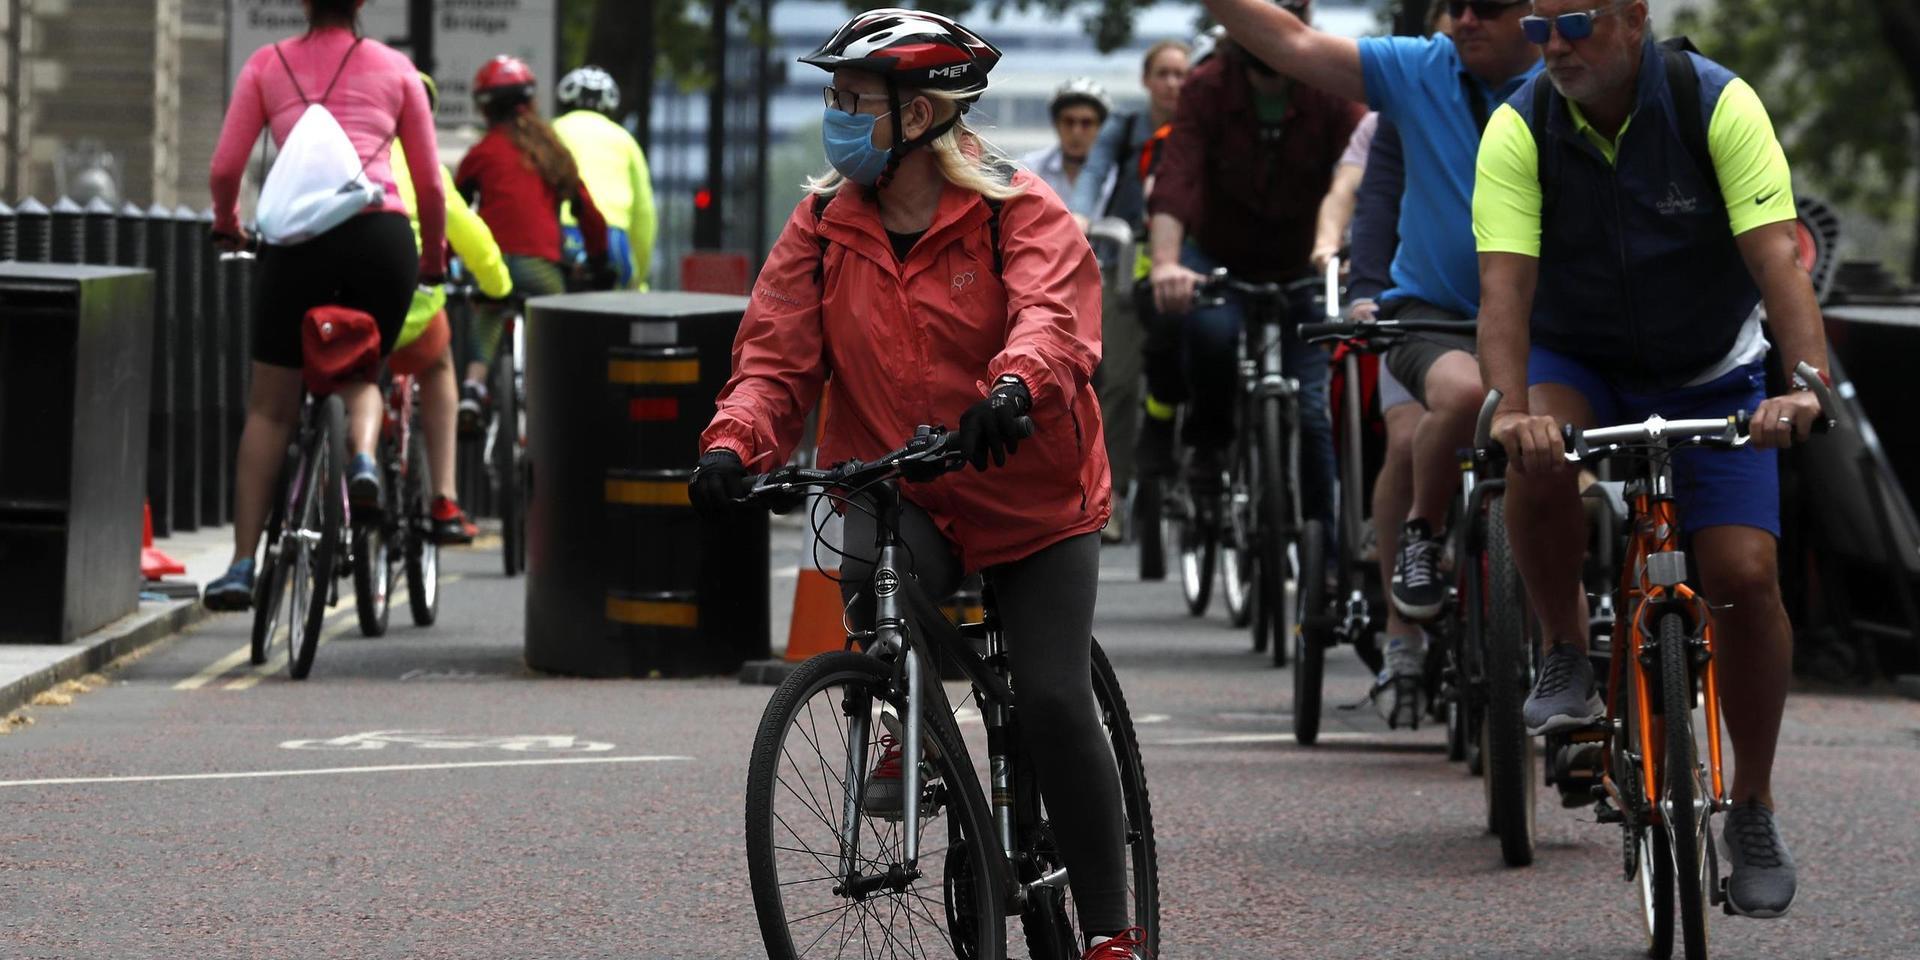 London är en av de sju städer som ingår i den nya studien. Här har många valt att ta cykeln för att undvika smitta under pandemin. Arkivbild.